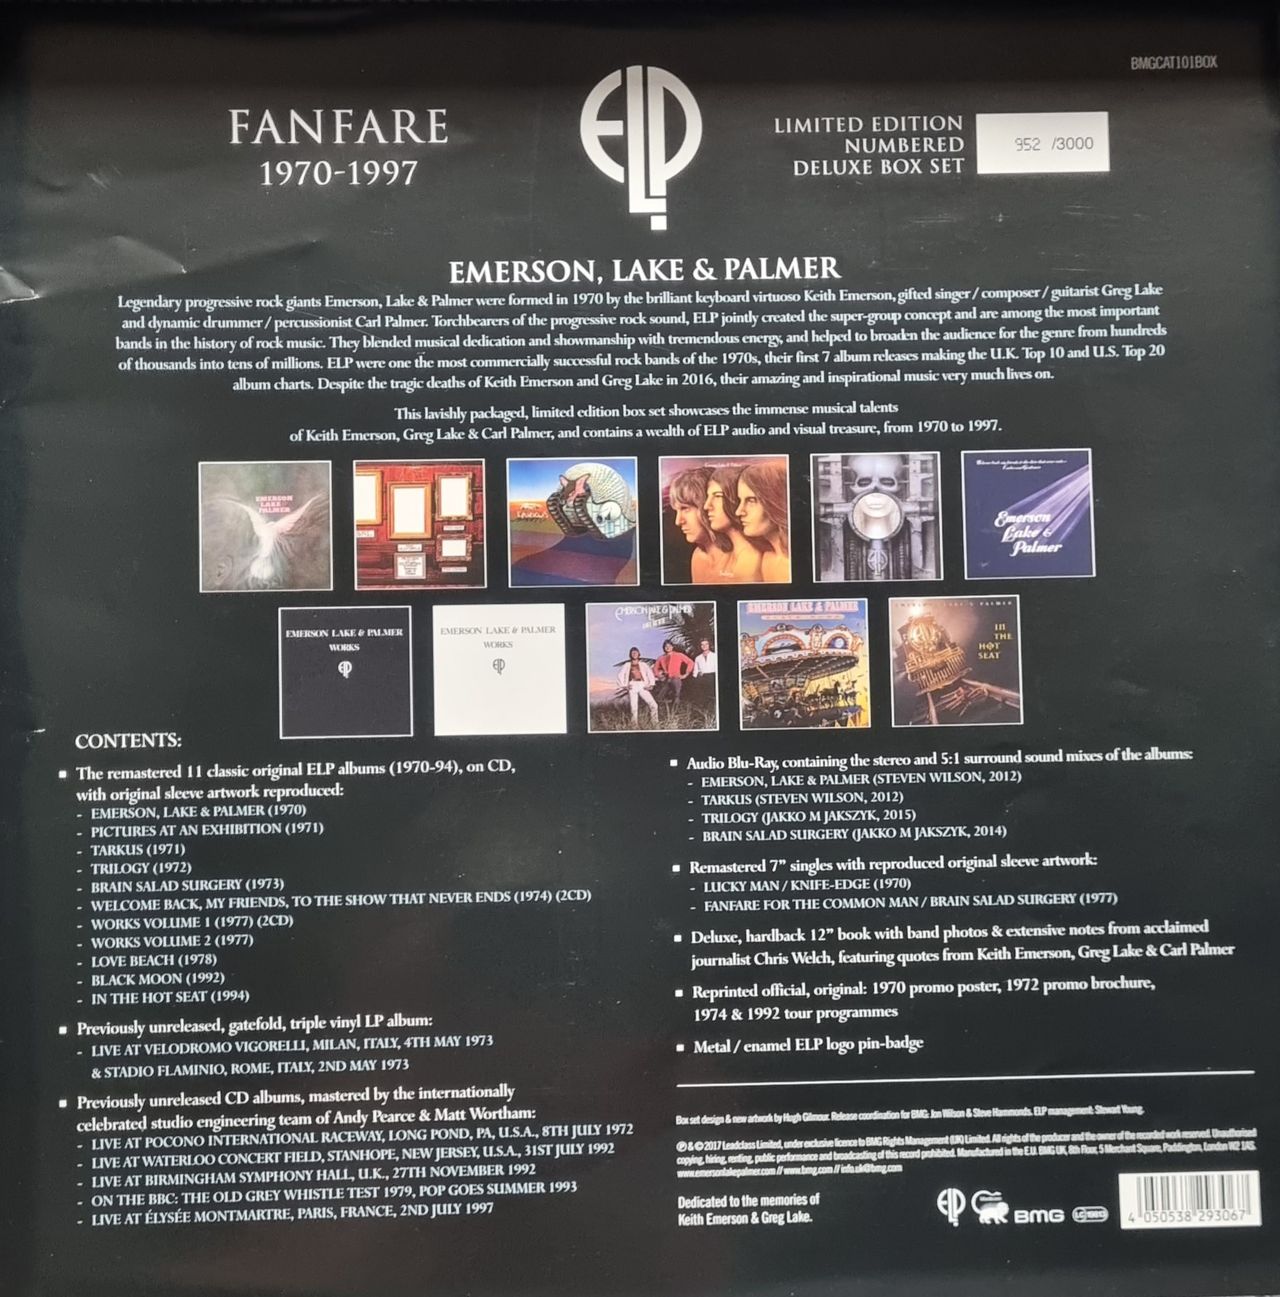 Emerson Lake & Palmer Fanfare 1970 - 1997 UK box set 4050538293067